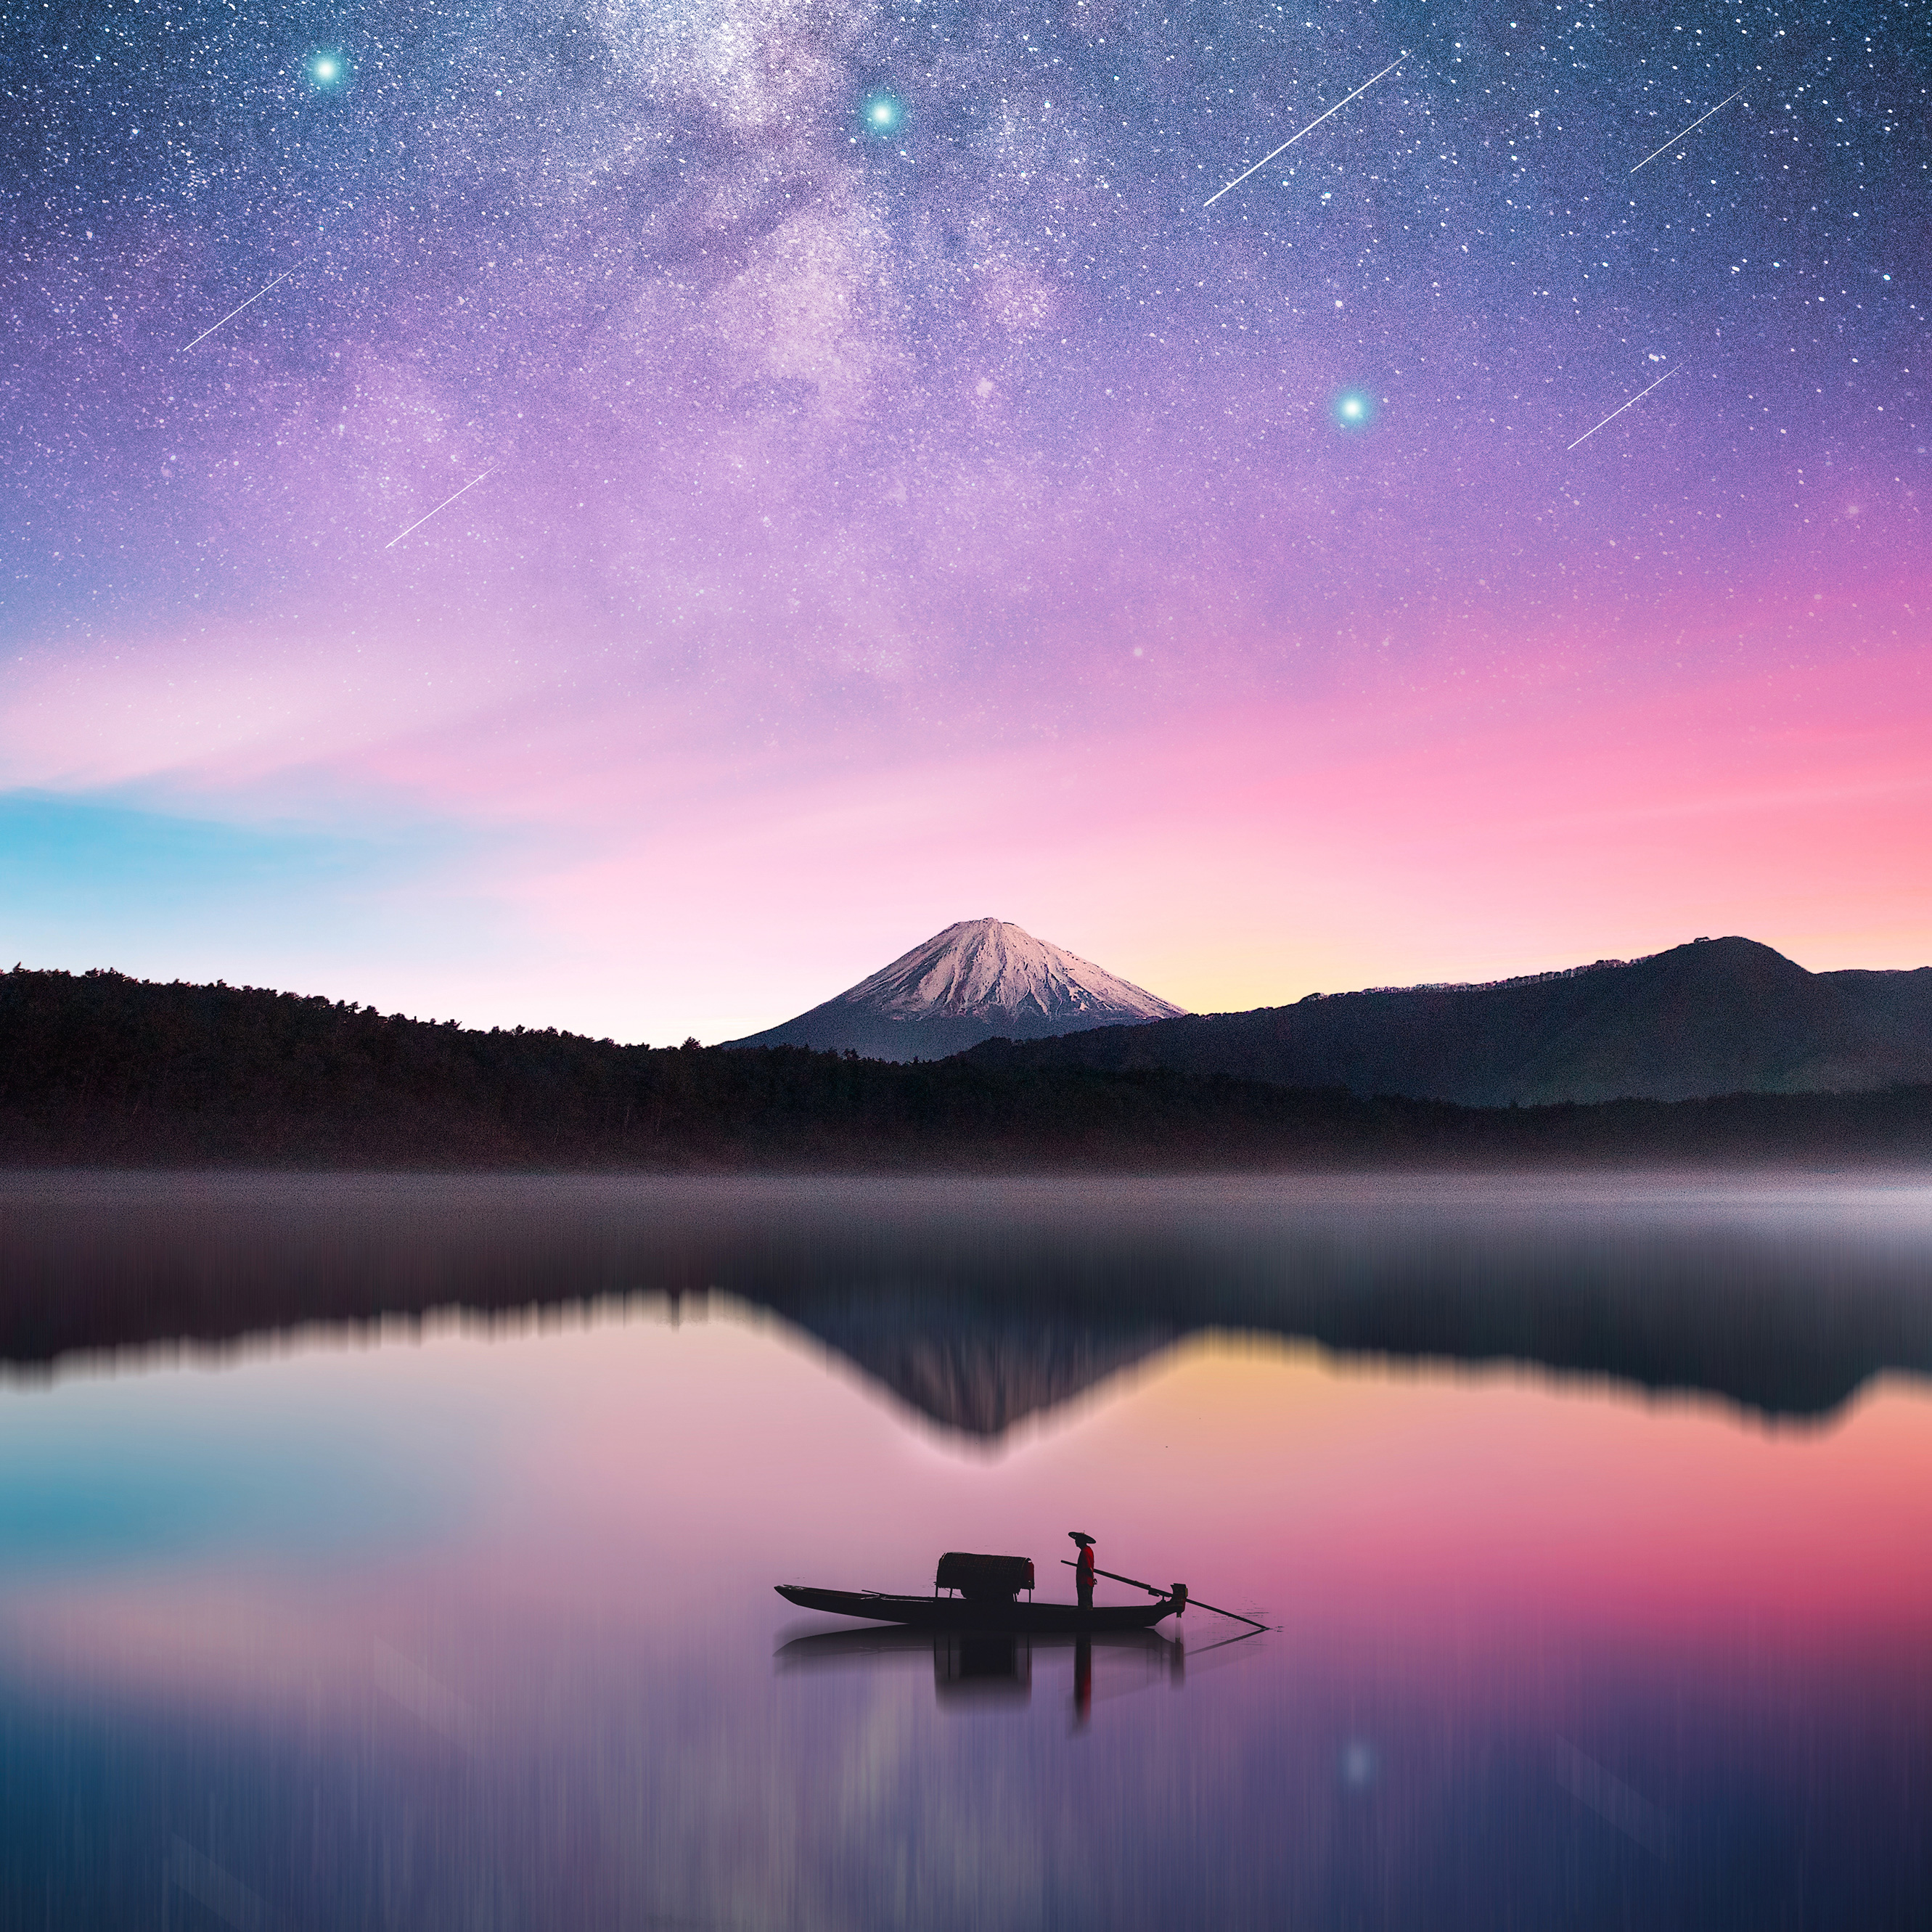 Обои Млечный путь гора Фудзи фотографии на рабочий стол